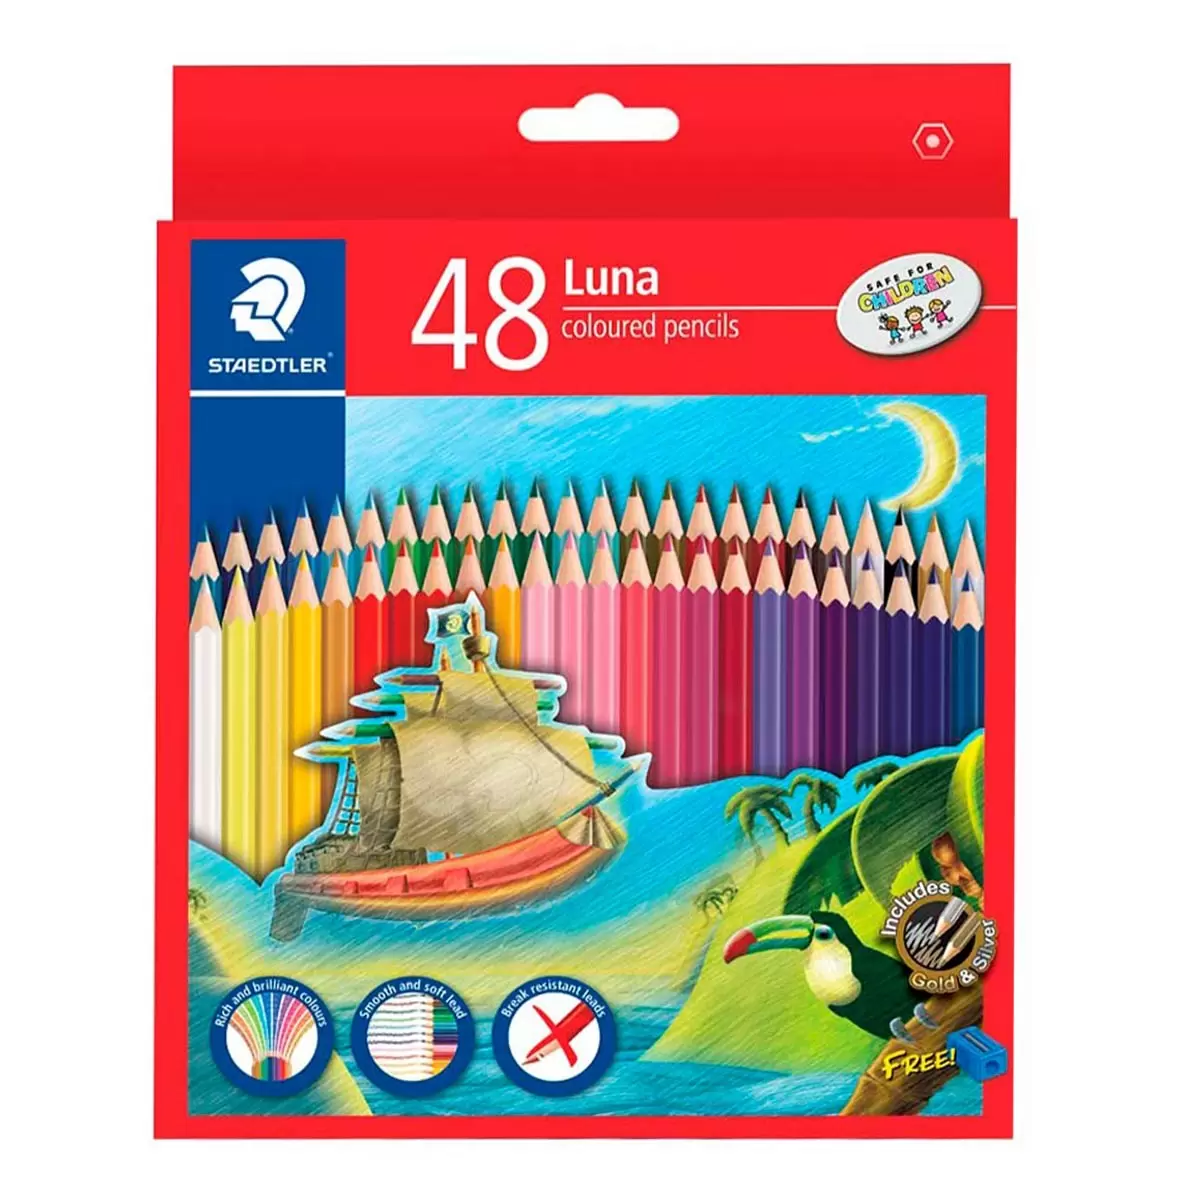 施德樓 Luna油性色鉛48色紙盒裝 X 3盒